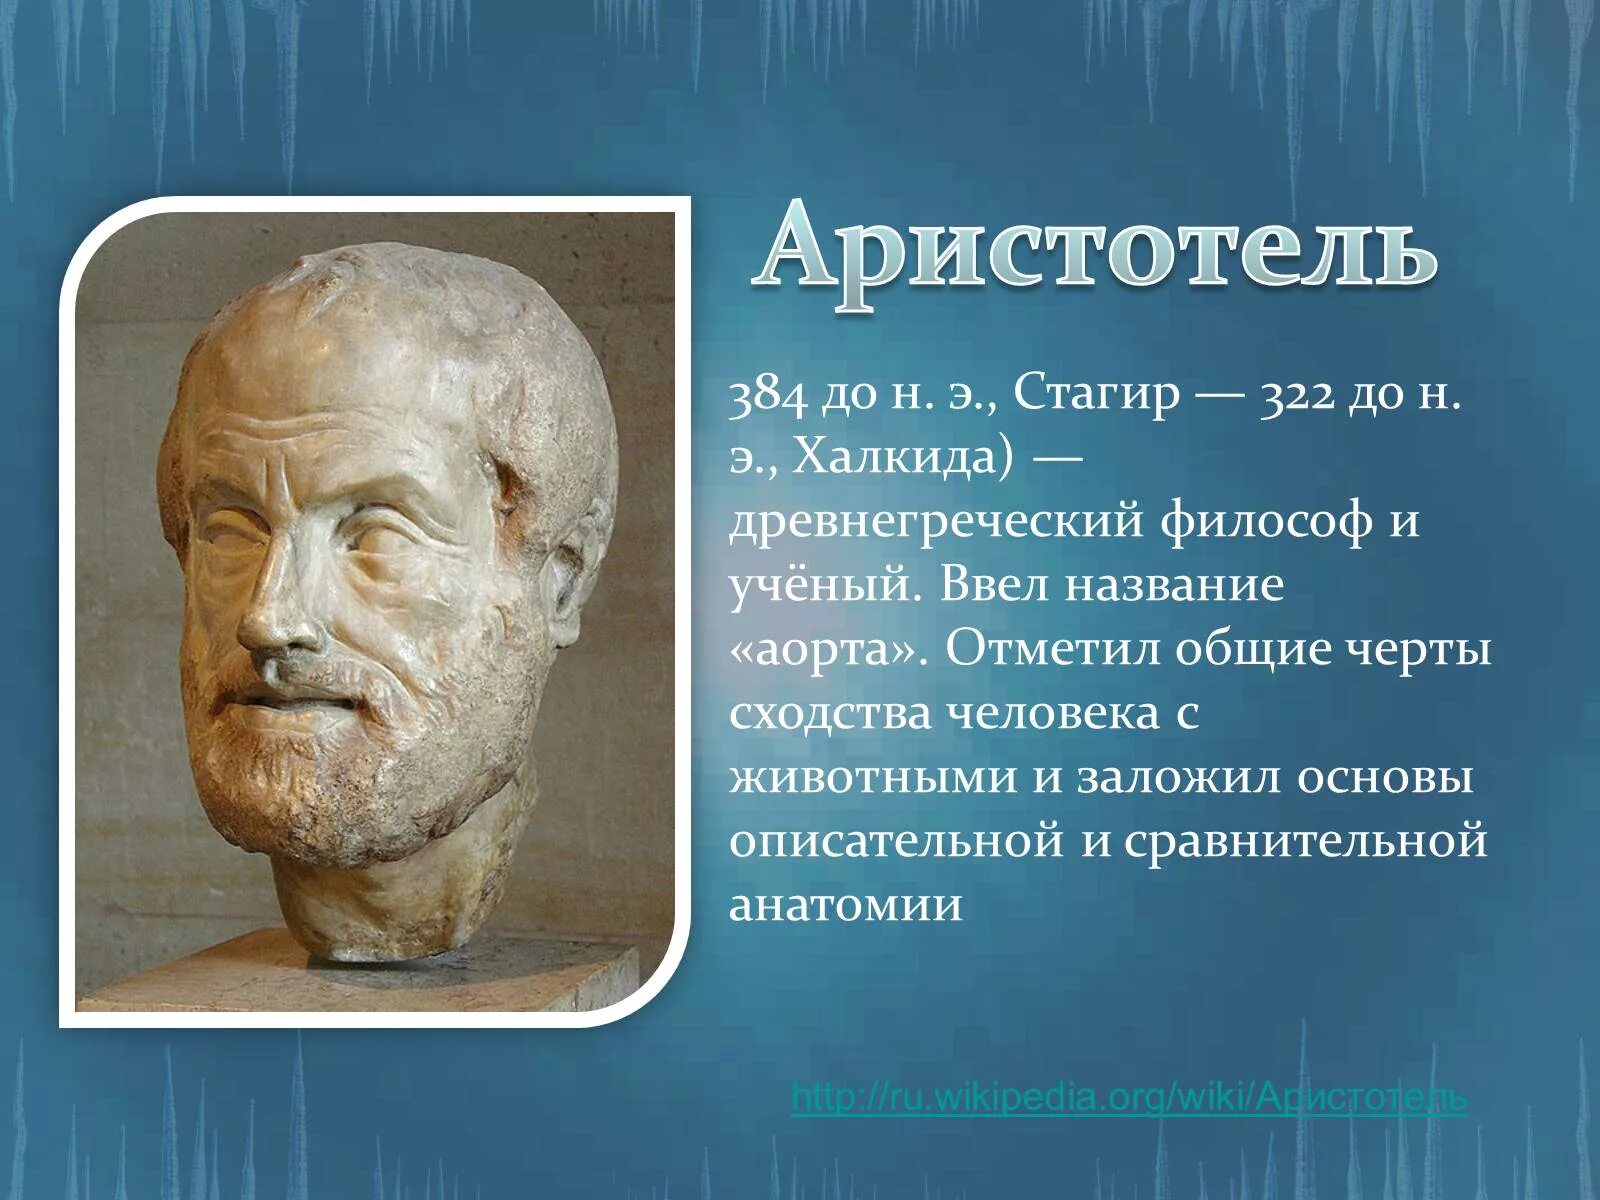 Аристотель (384 г. до н.э. - 322 г. до н.э.). Ученые анатомии. Портрет философа Аристотеля. Древние ученые анатомии.